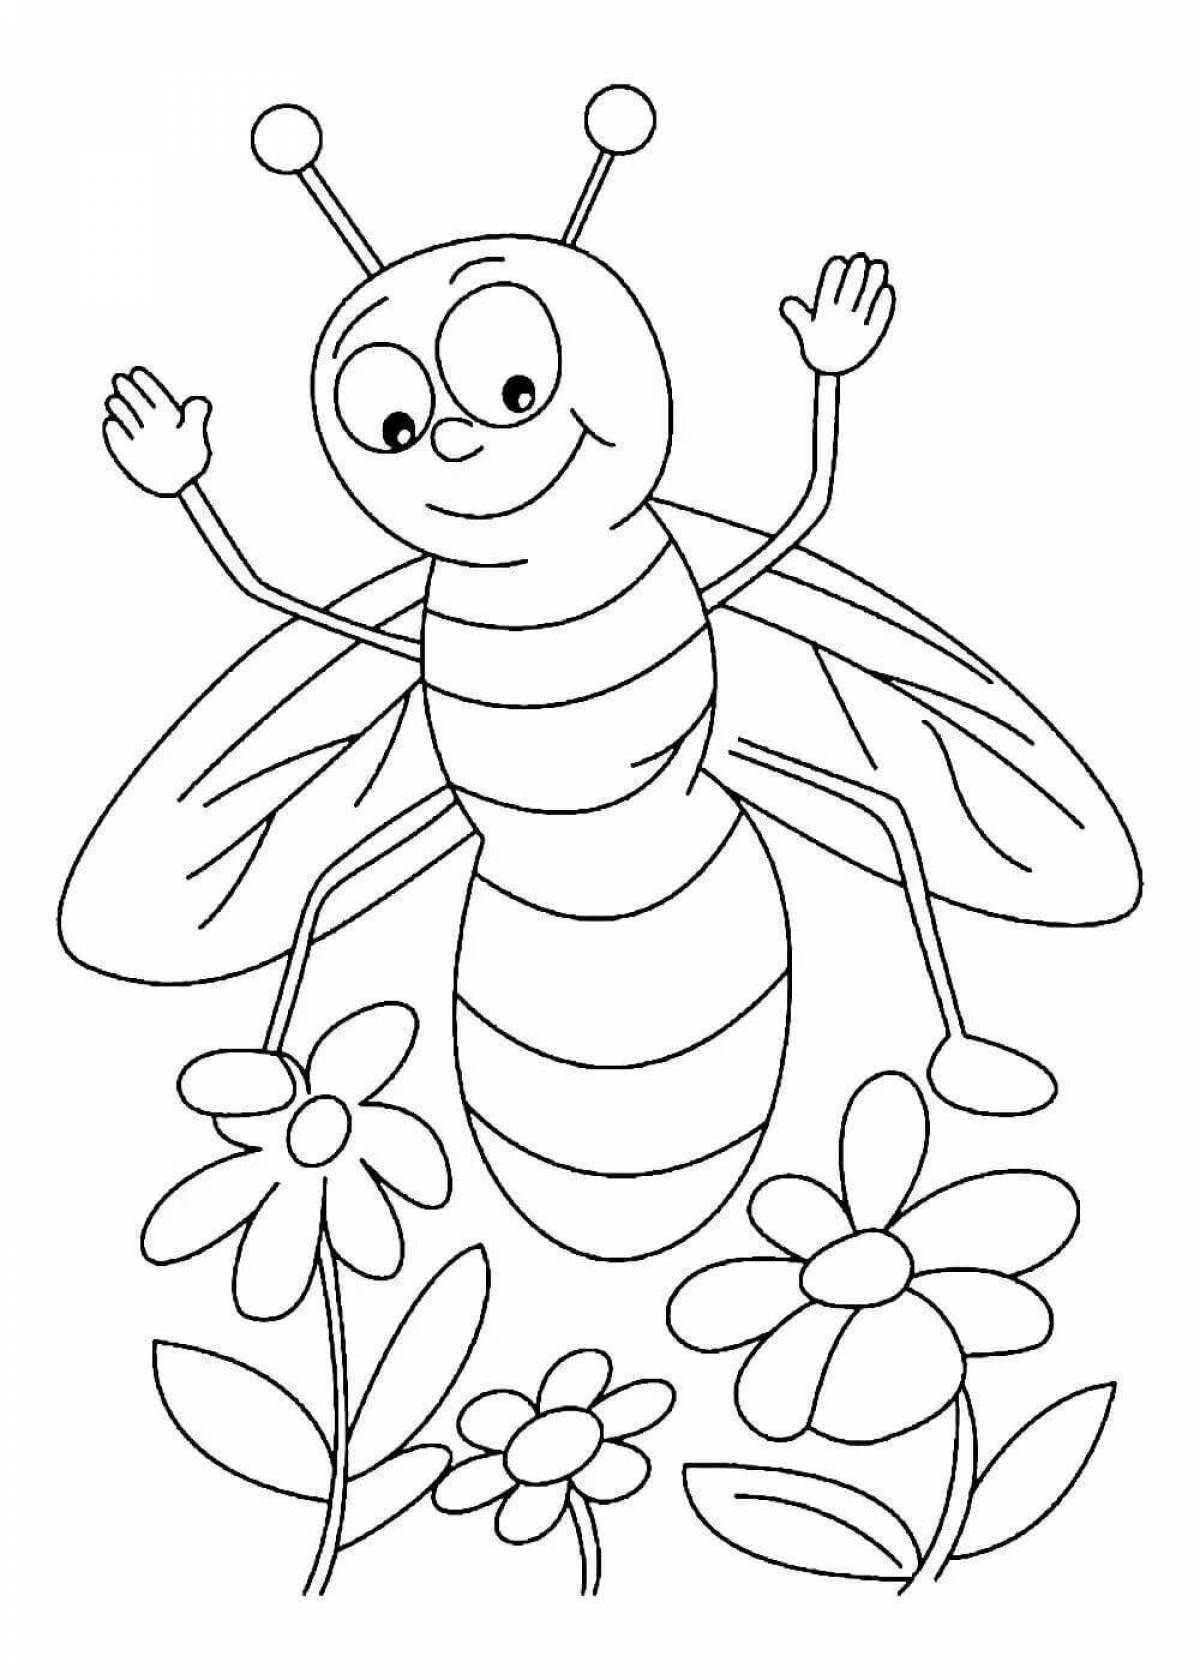 Веселая пчелка-раскраска для детей 3-4 лет